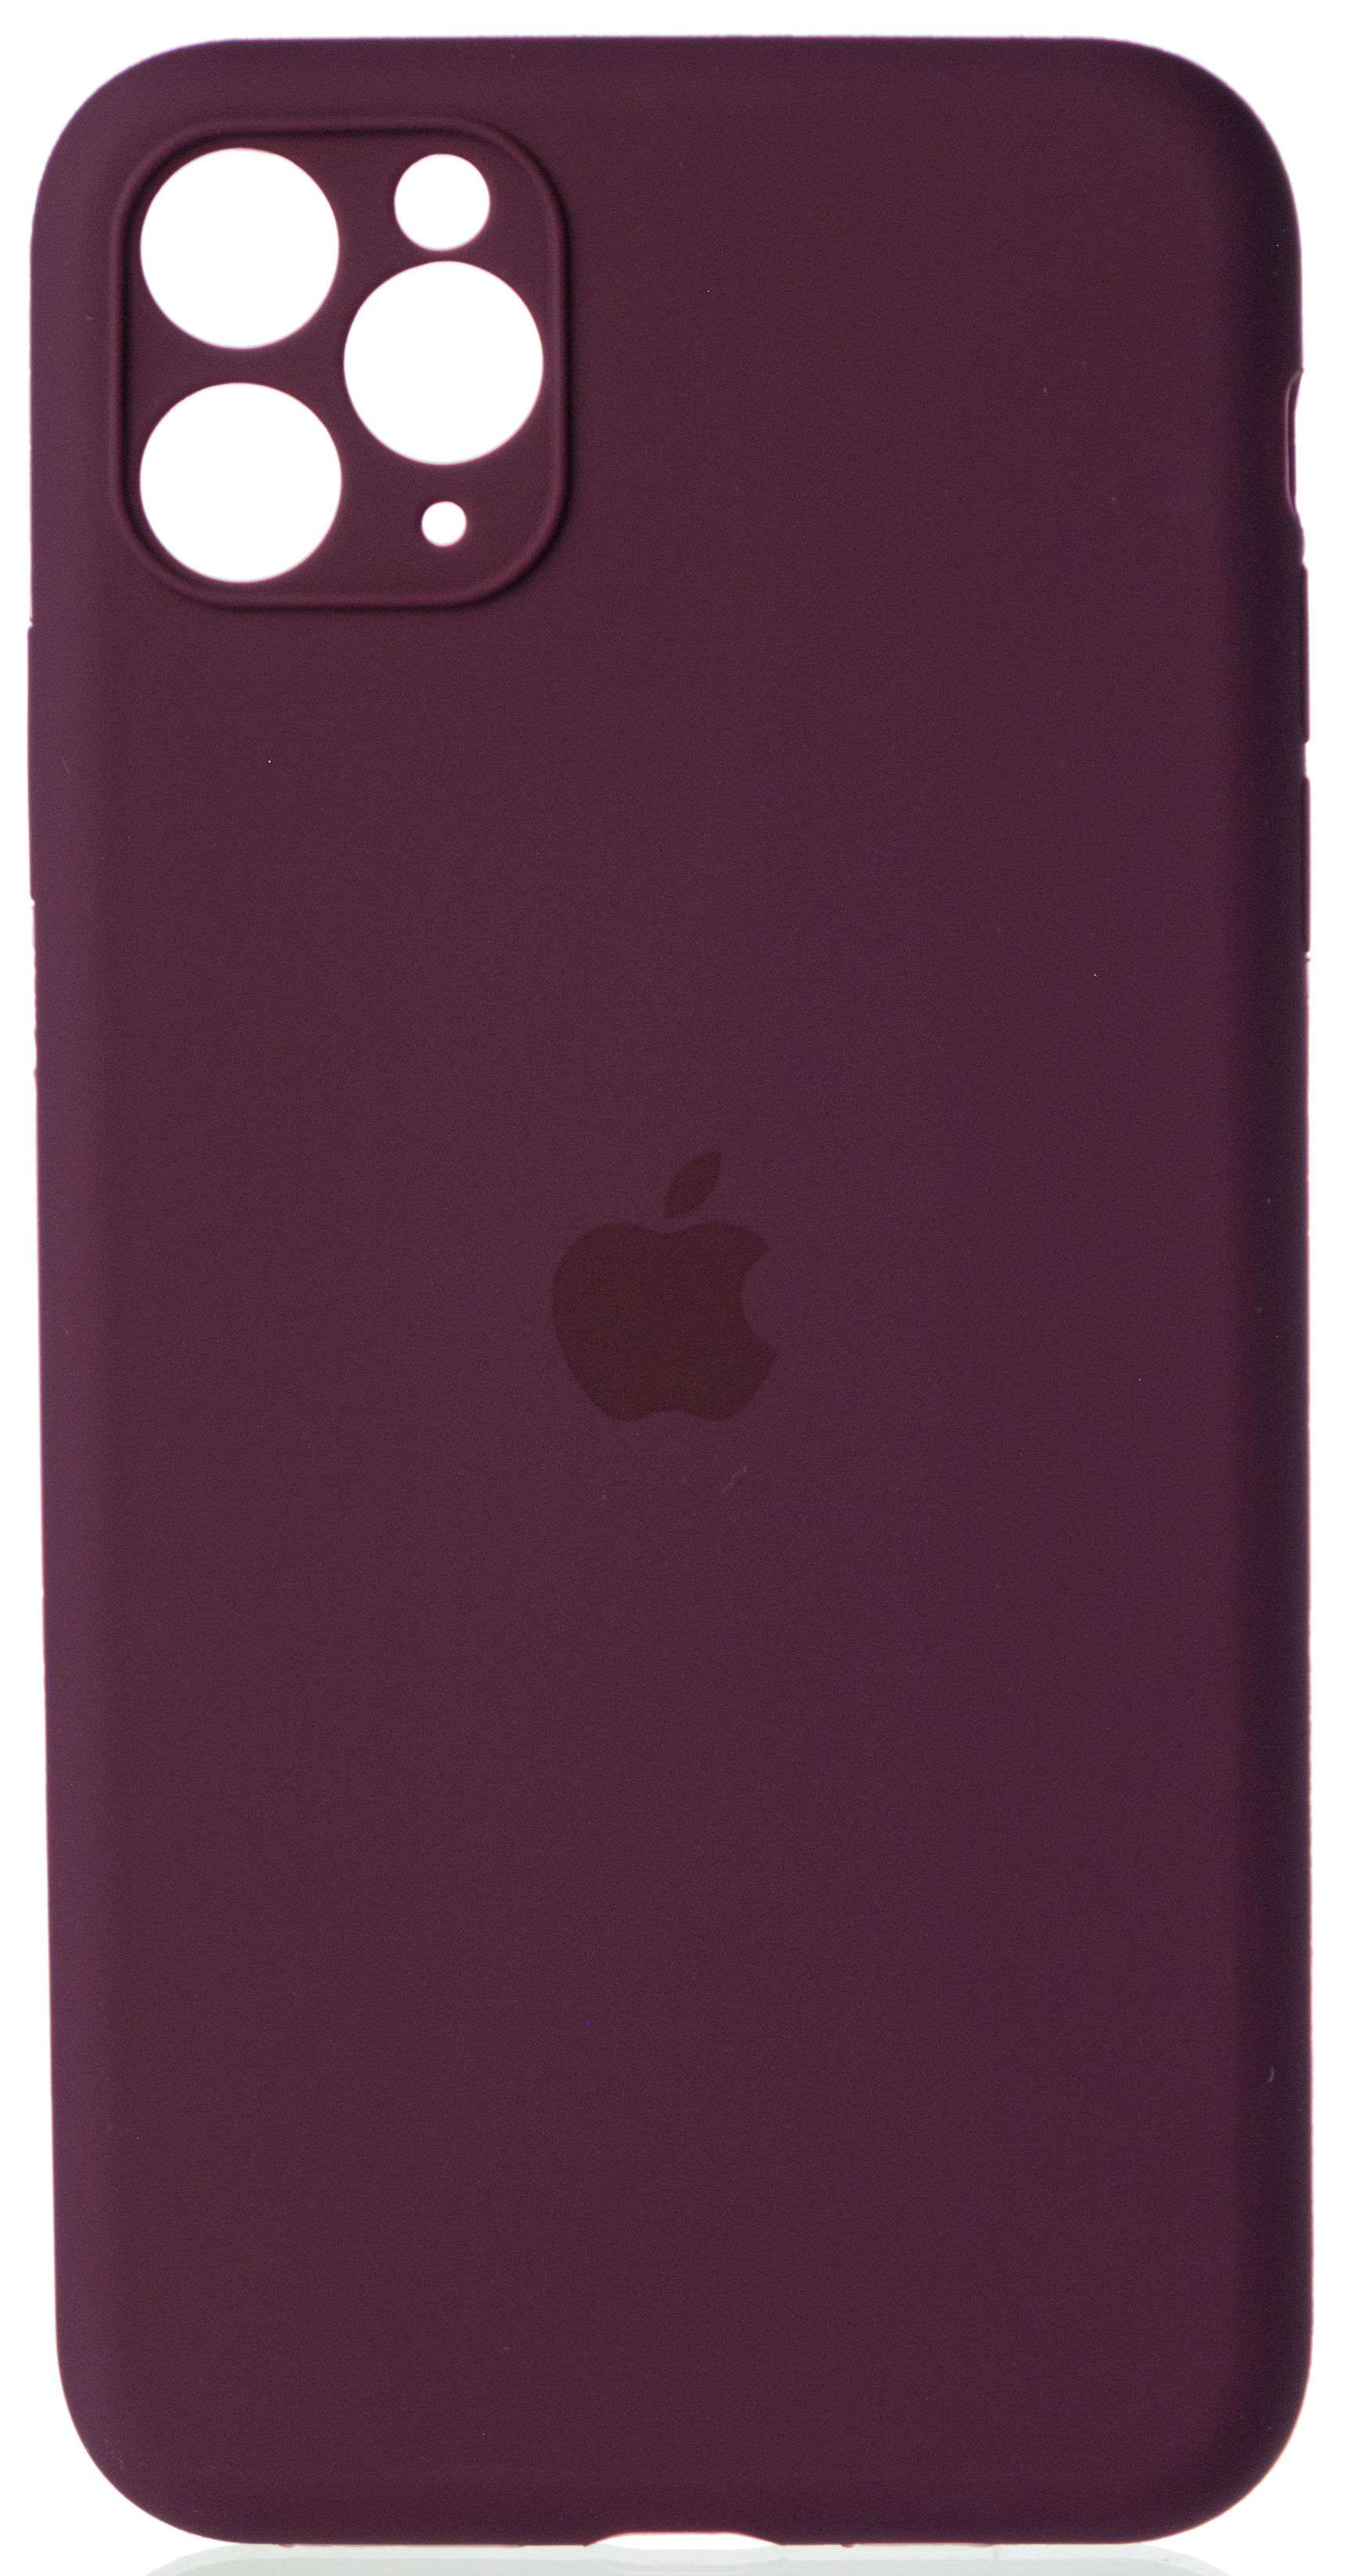 Чехол Silicone Case полная защита для iPhone 11 Pro Max винный